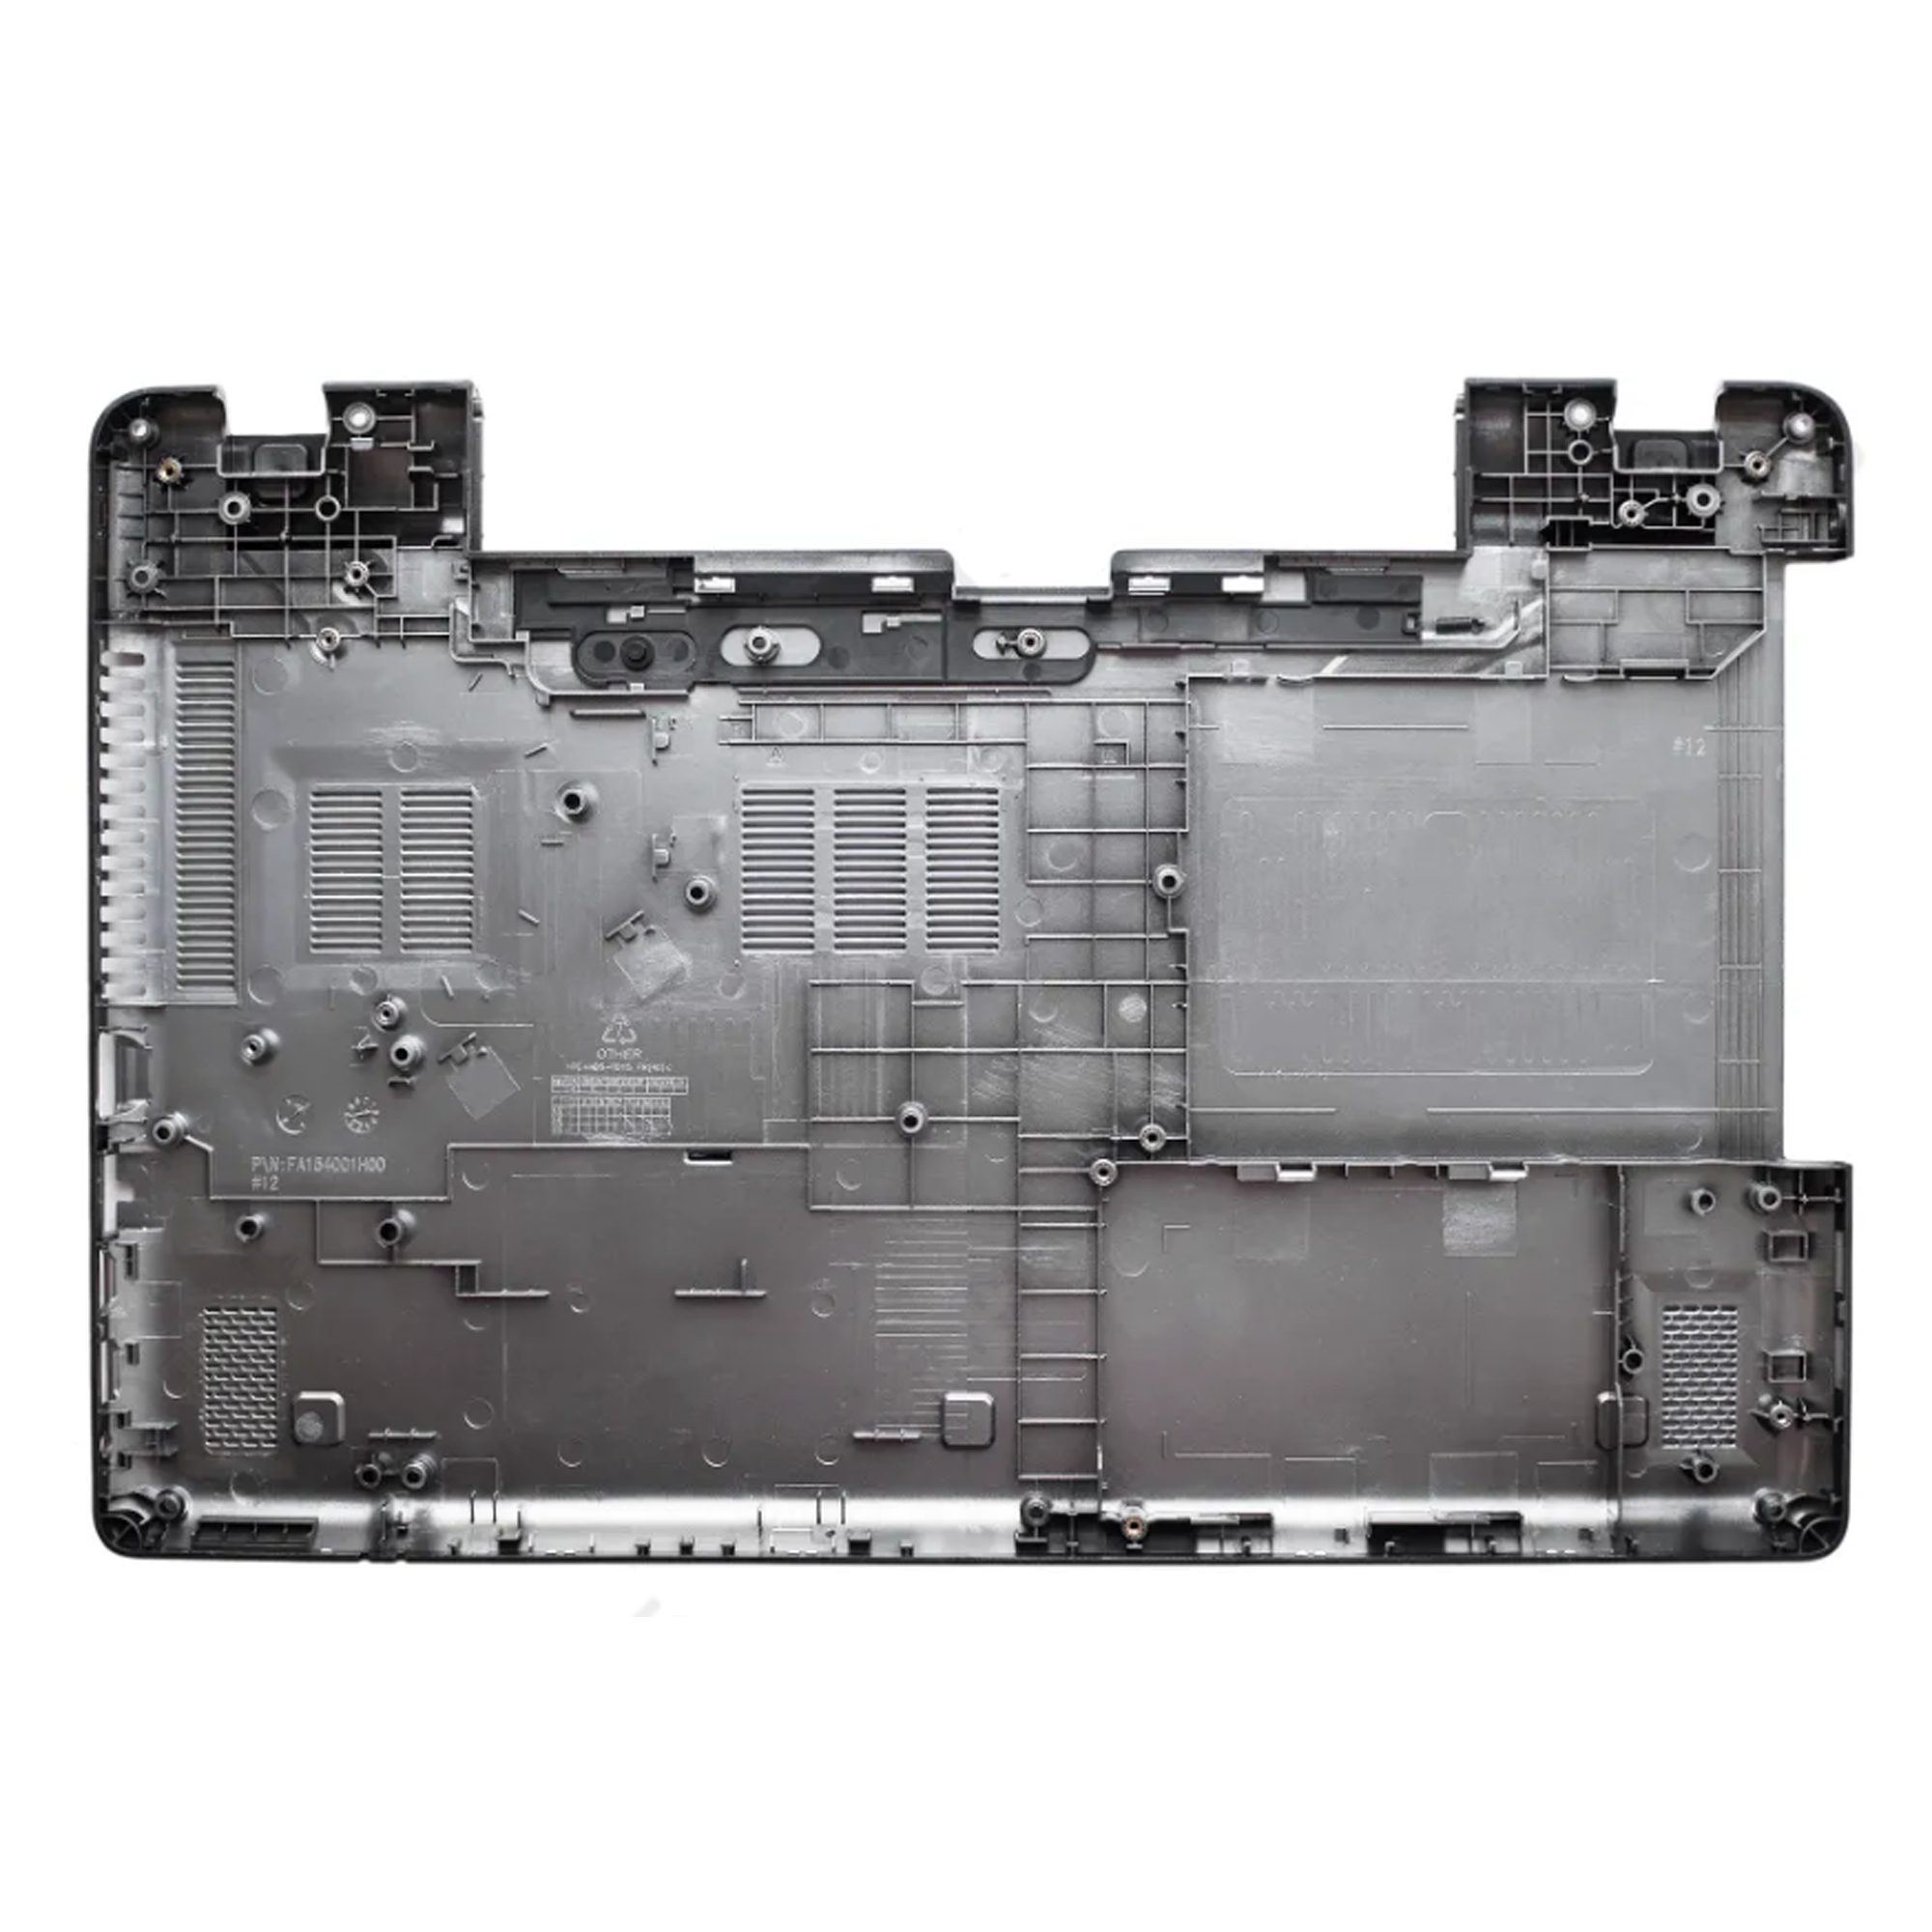 Нижняя часть корпуса (поддон) для ноутбука Acer Aspire E5-571, E5-551, E5-521, E5-511, E5-511G, E5-511P, E5-551G, E5-571G, E5-531, черная